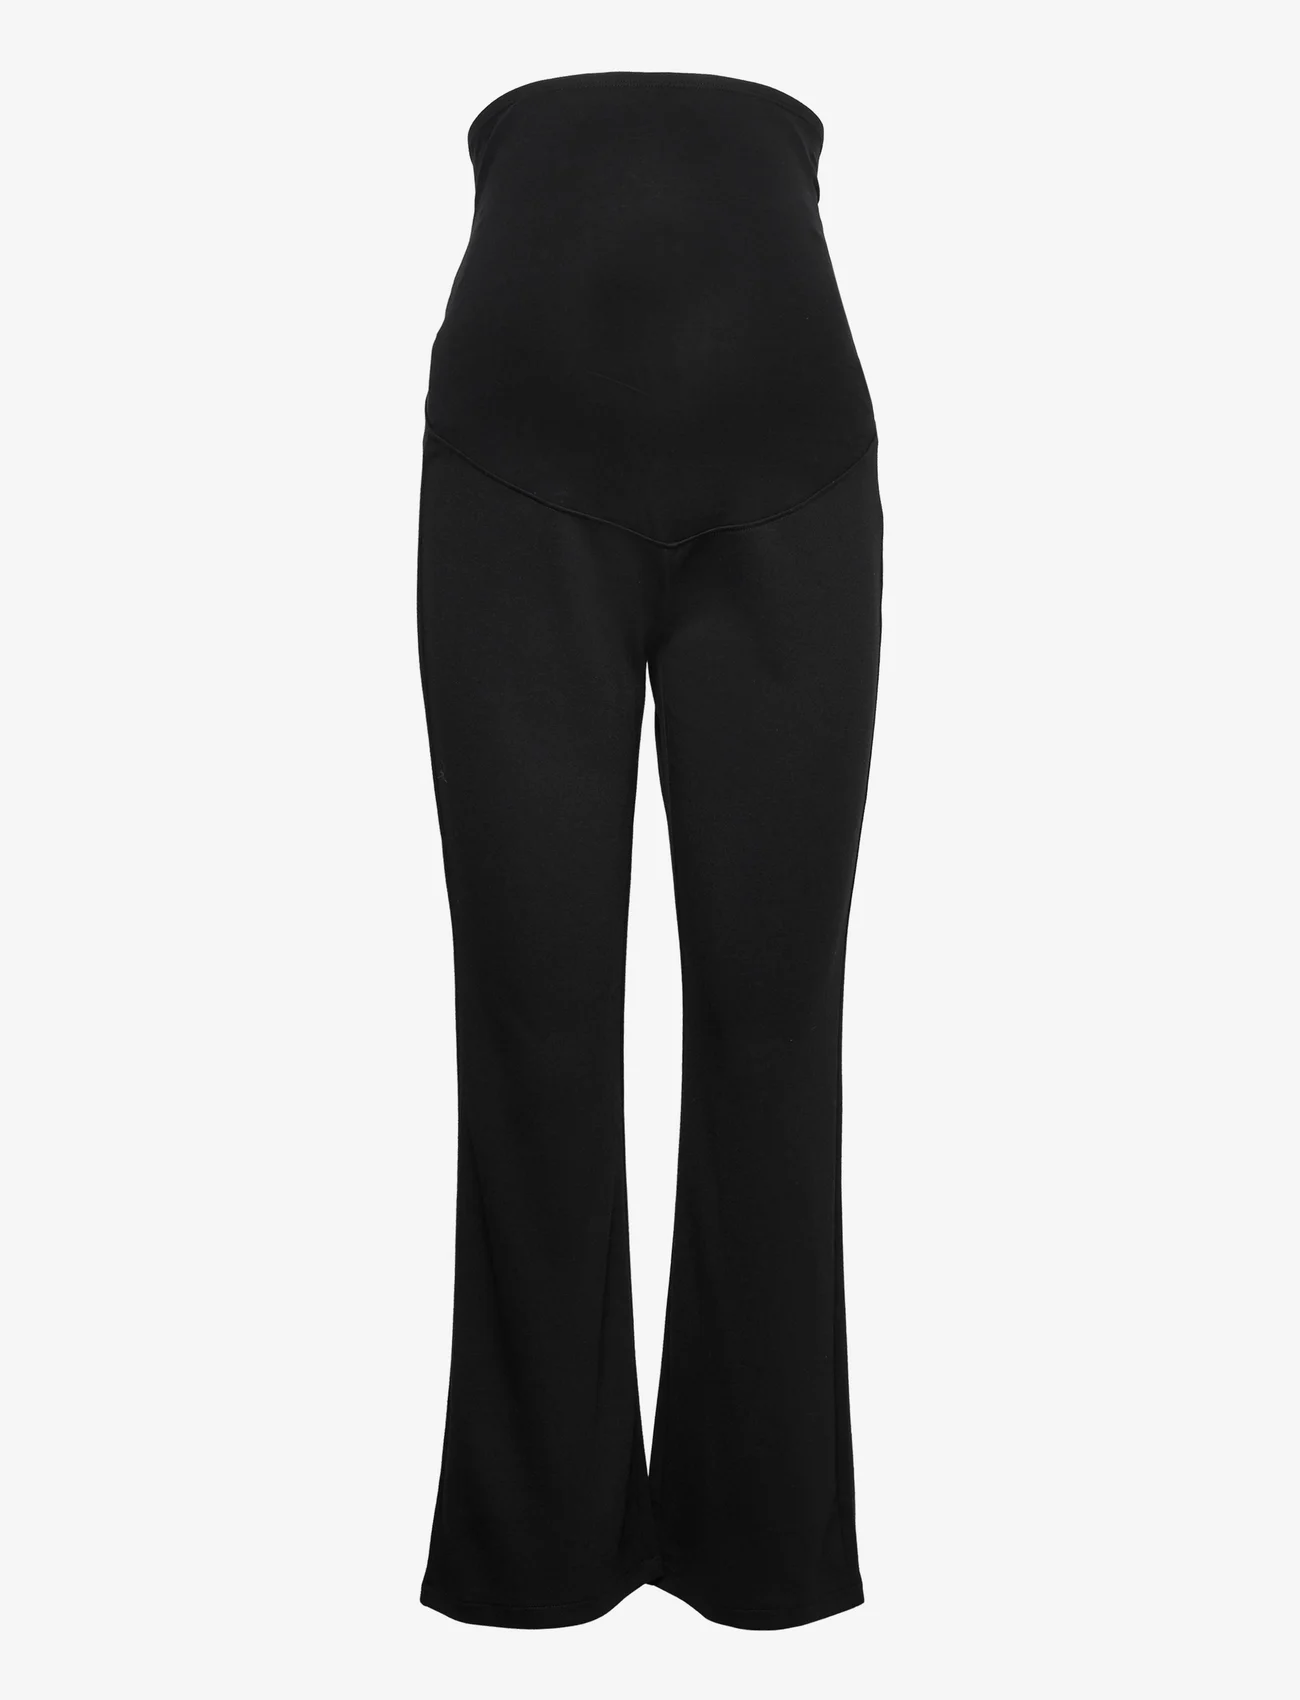 Lindex - Trousers MOM Inna - nordisk stil - black - 1